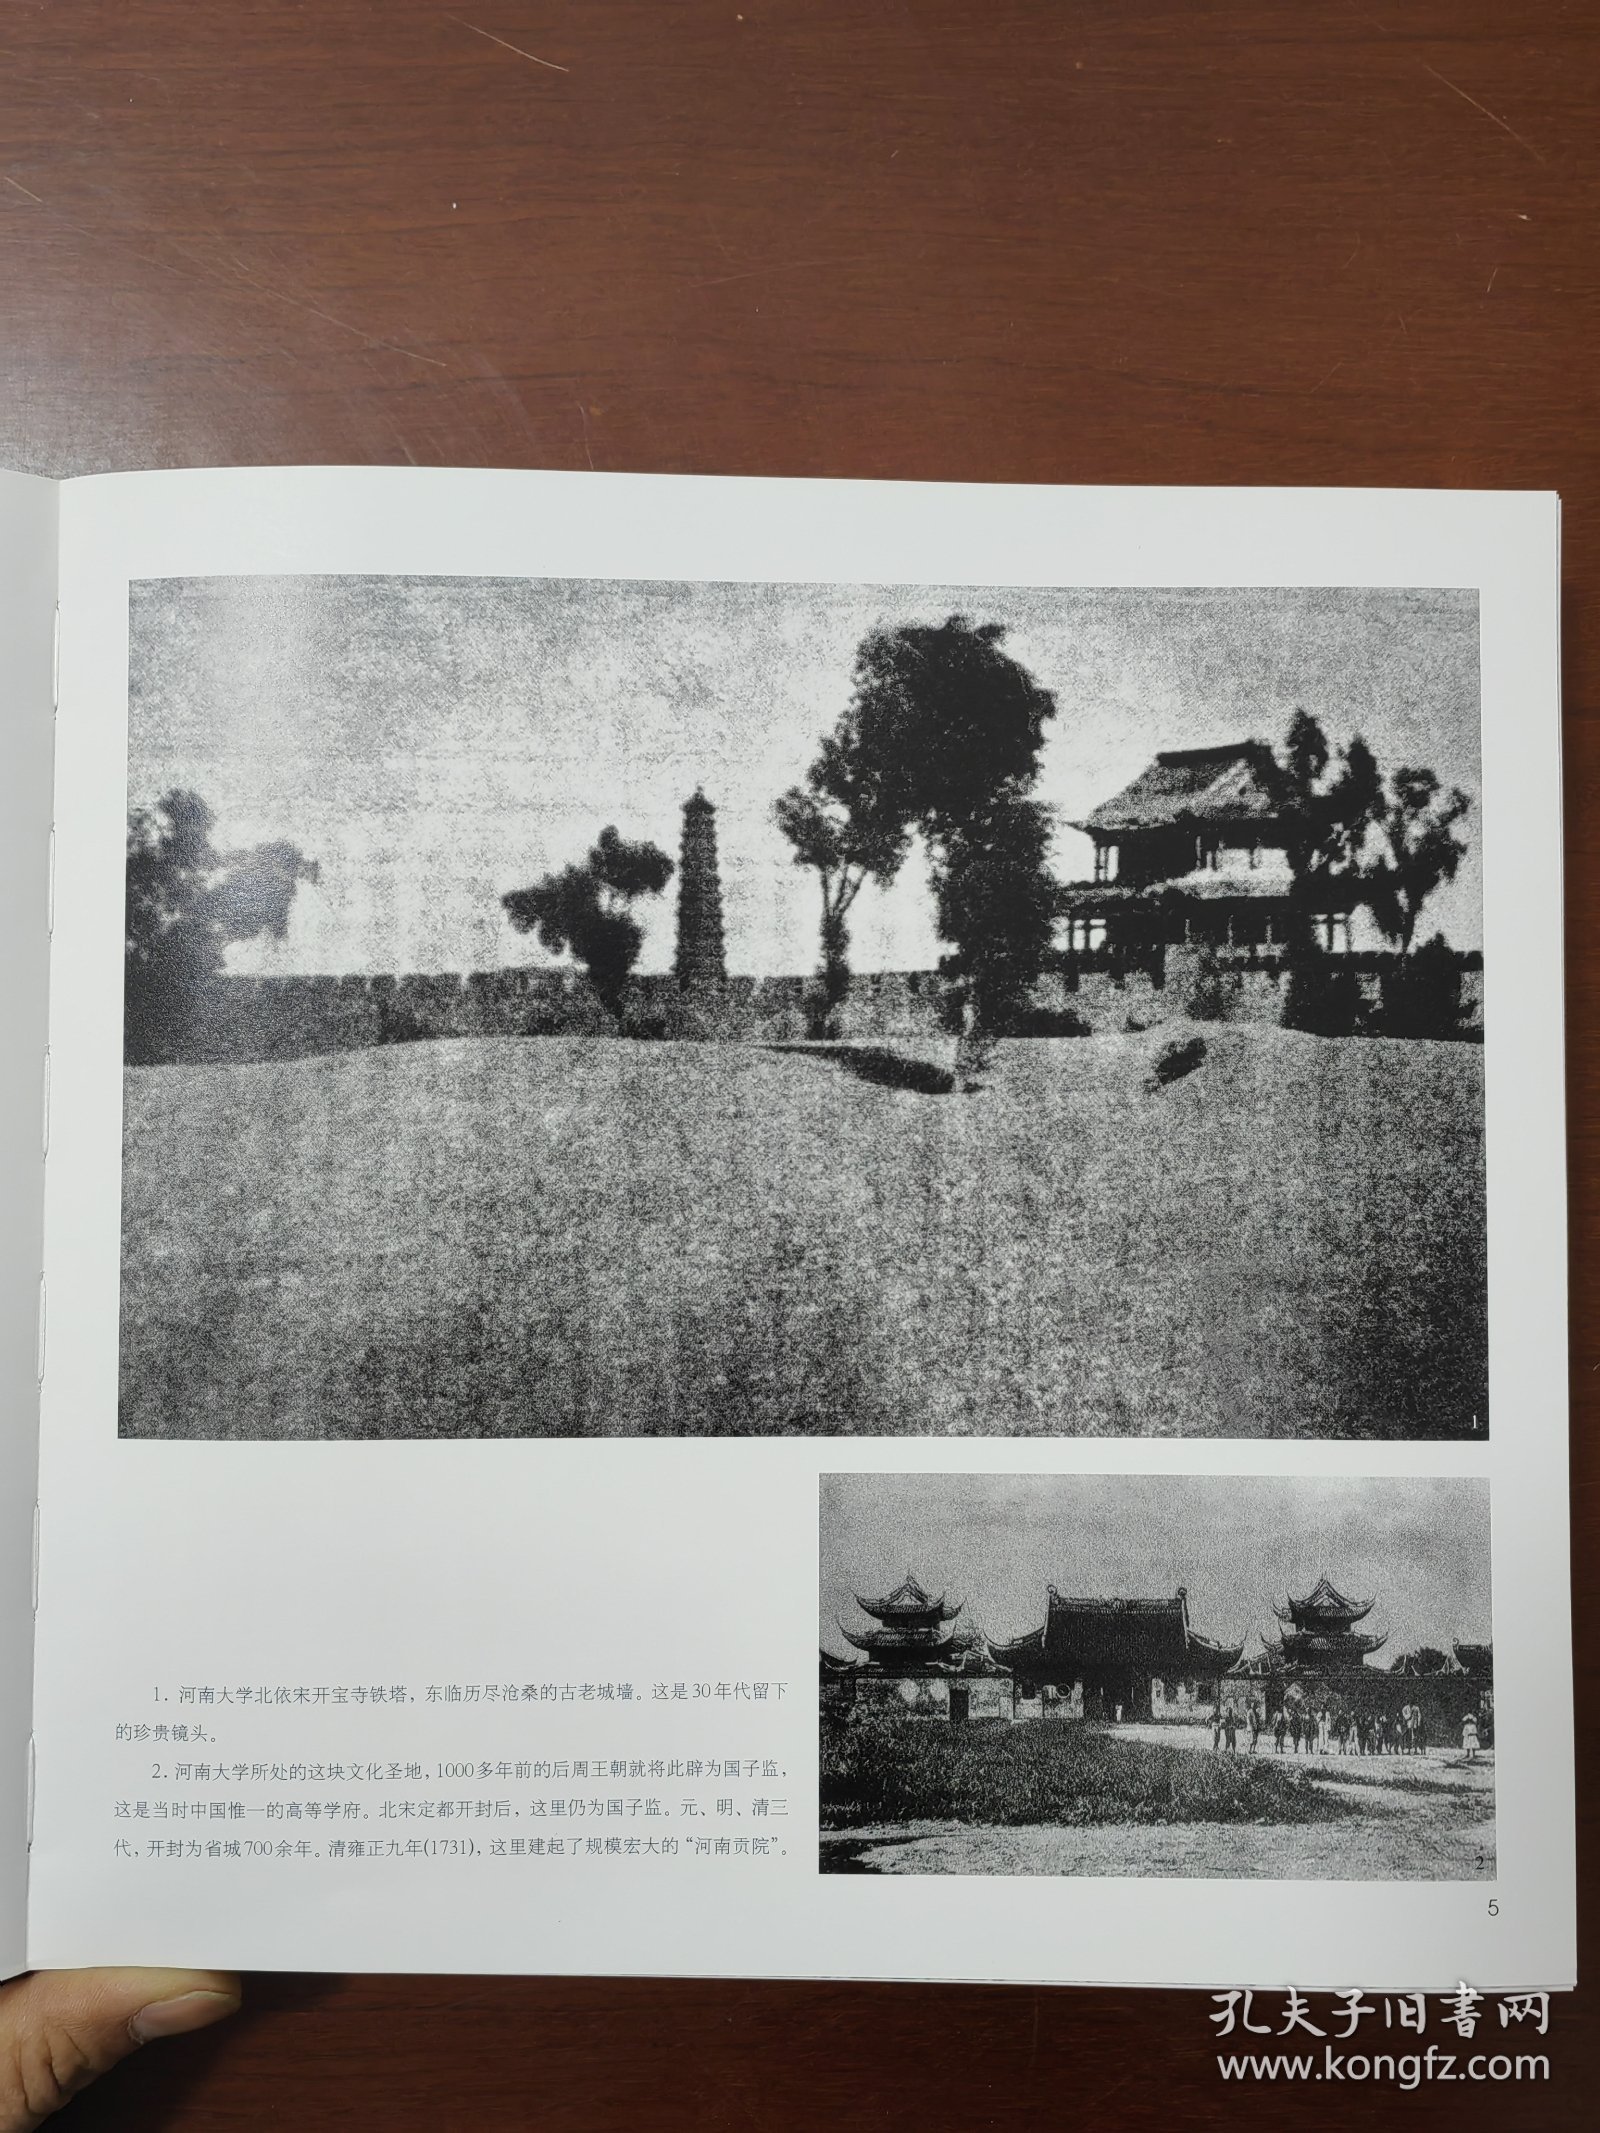 与世纪同行——河大九十年（1912-2002）河南大学建校90周年纪念，均为老照片，书厚重